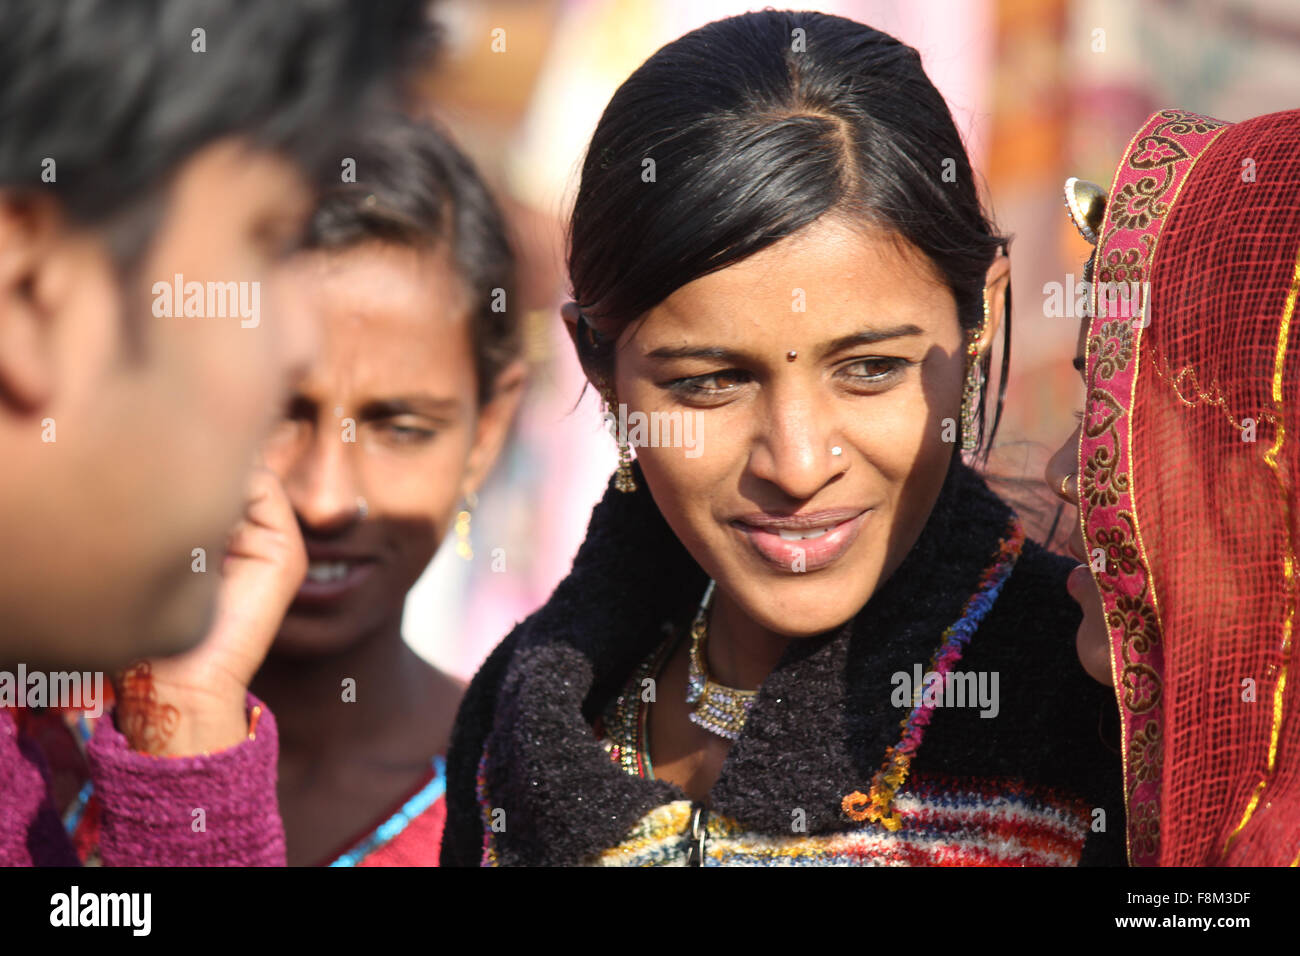 Pushkar, India, 28 de noviembre de 2012: hermosa chica india en la feria de Pushkar, en el estado de Rajasthan India Foto de stock